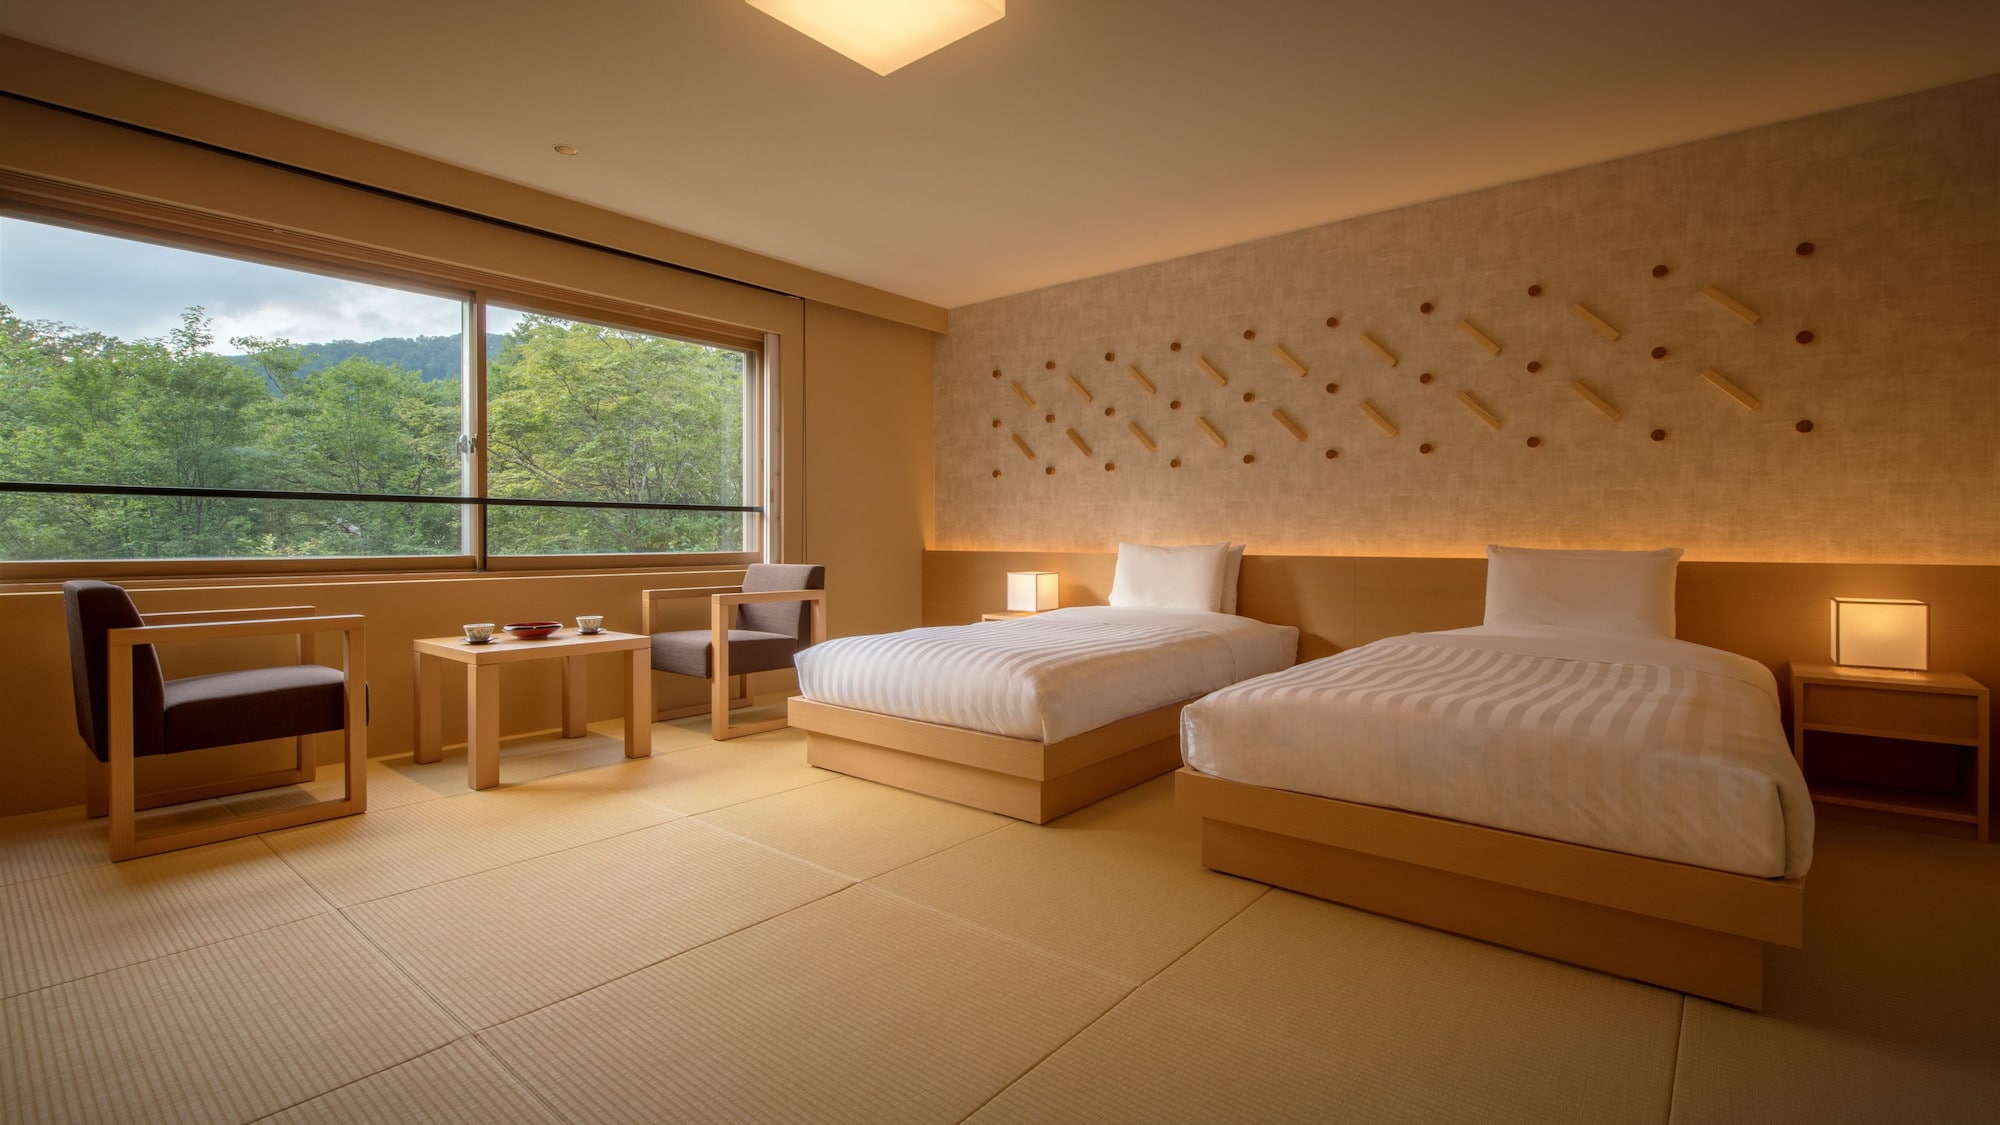 [ต่ออายุห้องเตียงแฝดสไตล์ญี่ปุ่น] ต่ออายุห้องเสื่อทาทามิและห้องนอนโดยใช้ไม้ซีดาร์อาคิตะ